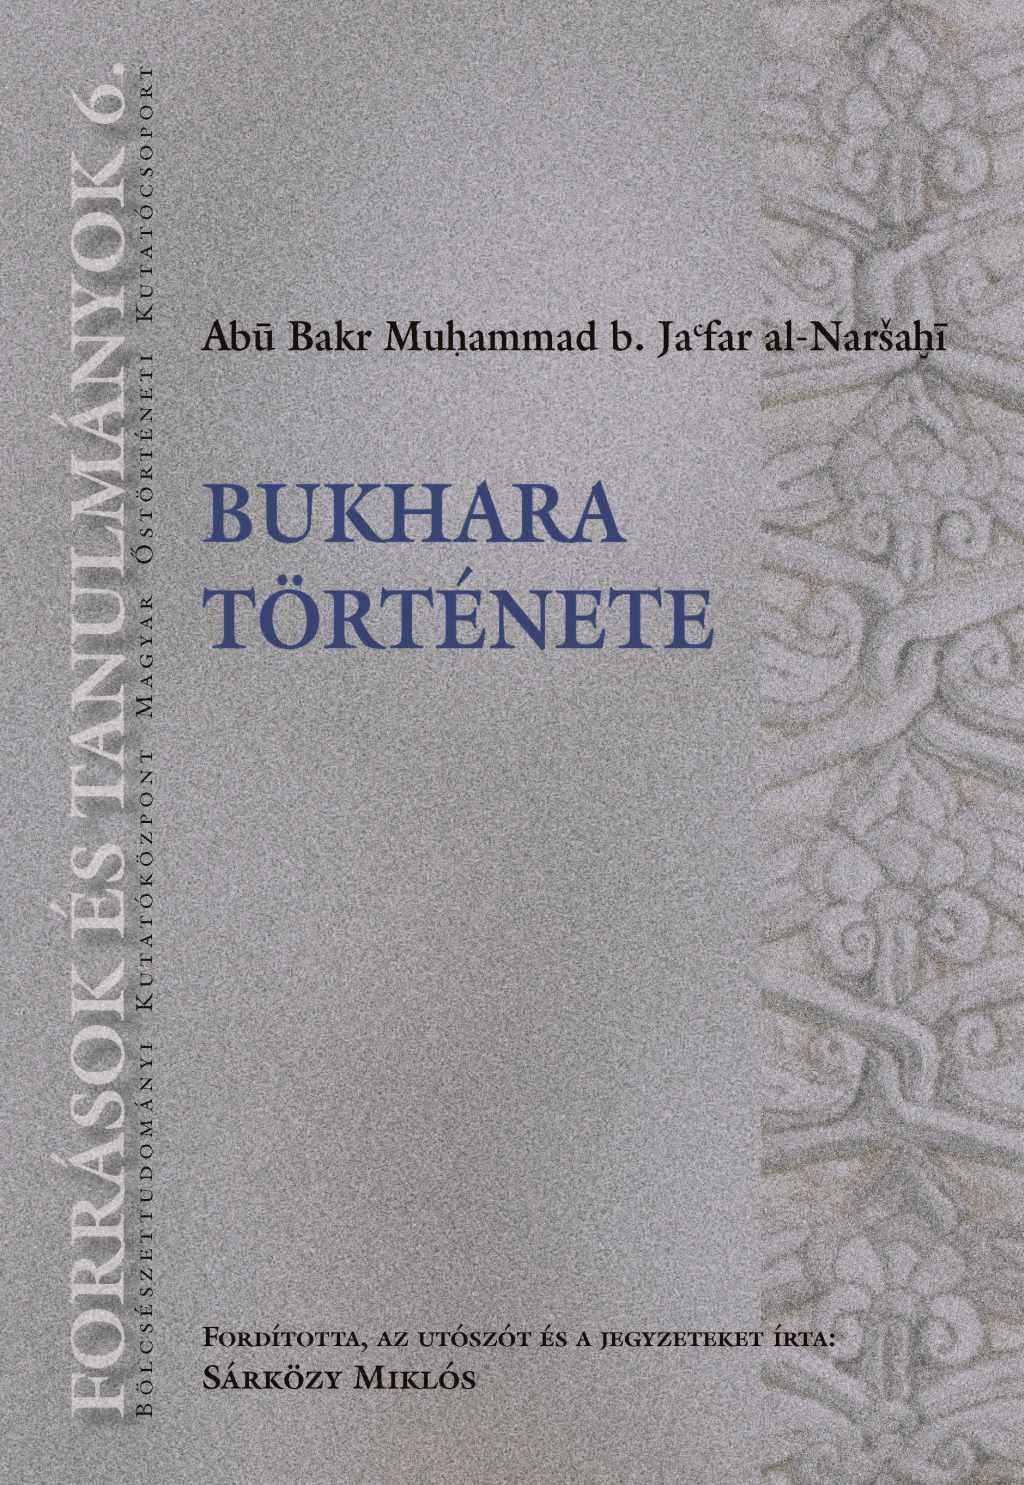 Abu Bakr Muhammad b. Jafar al-Nar¹ahi - Bukhara története